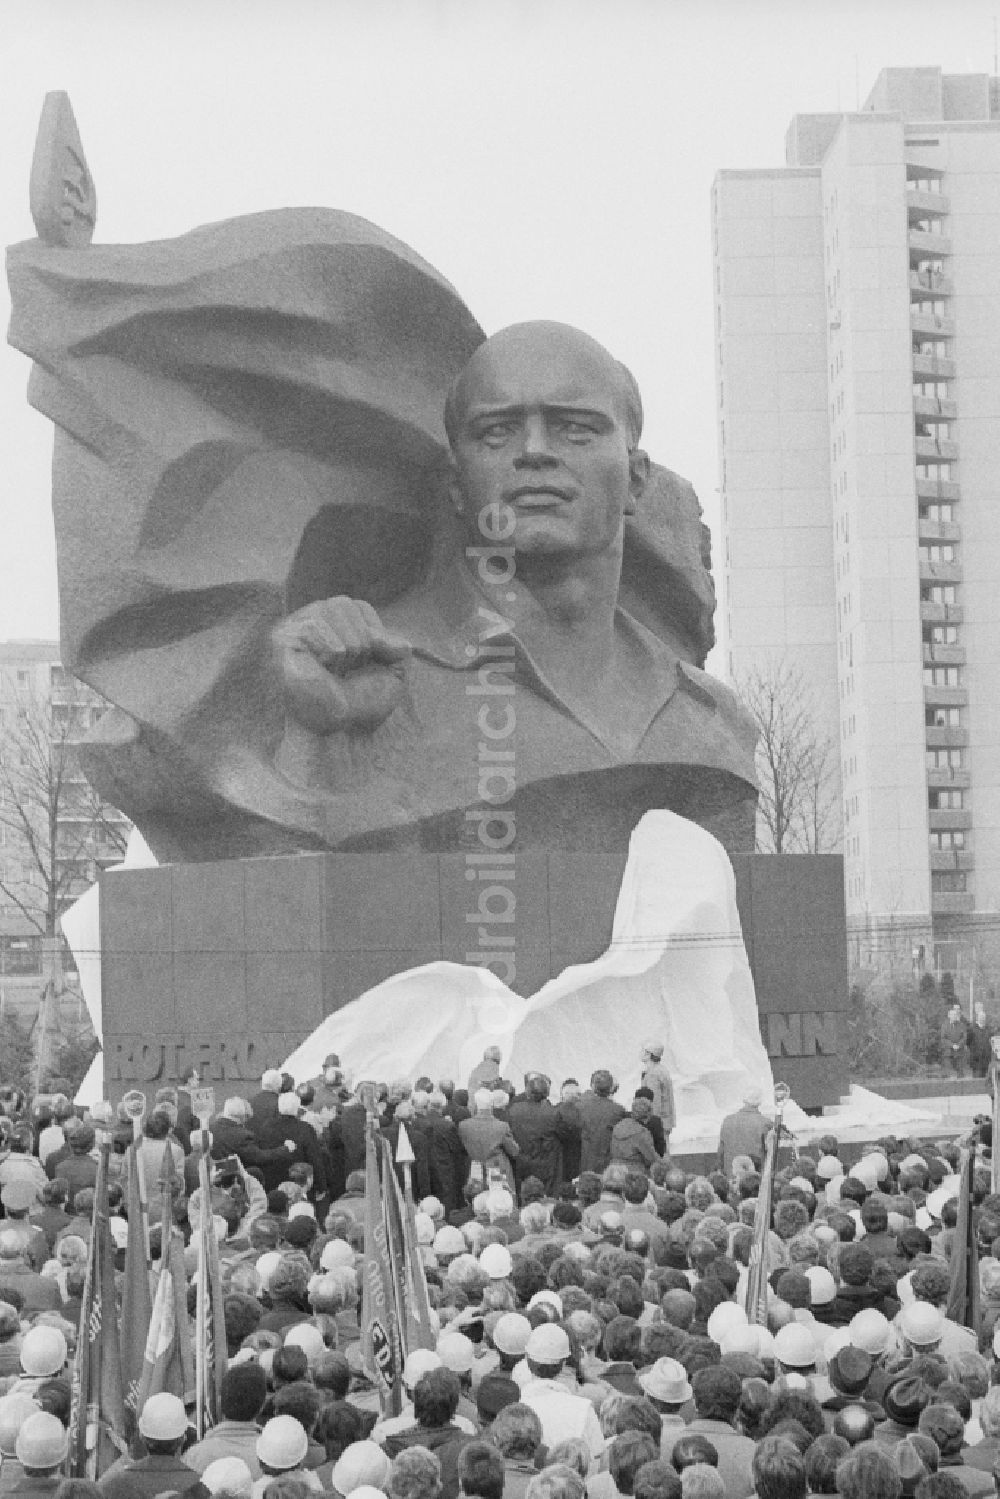 DDR-Fotoarchiv: Berlin - Feierliche Enthüllung vom Ernst-Thälmann-Denkmal im Ernst-Thälmann-Park in Berlin, der ehemaligen Hauptstadt der DDR, Deutsche Demokratische Republik